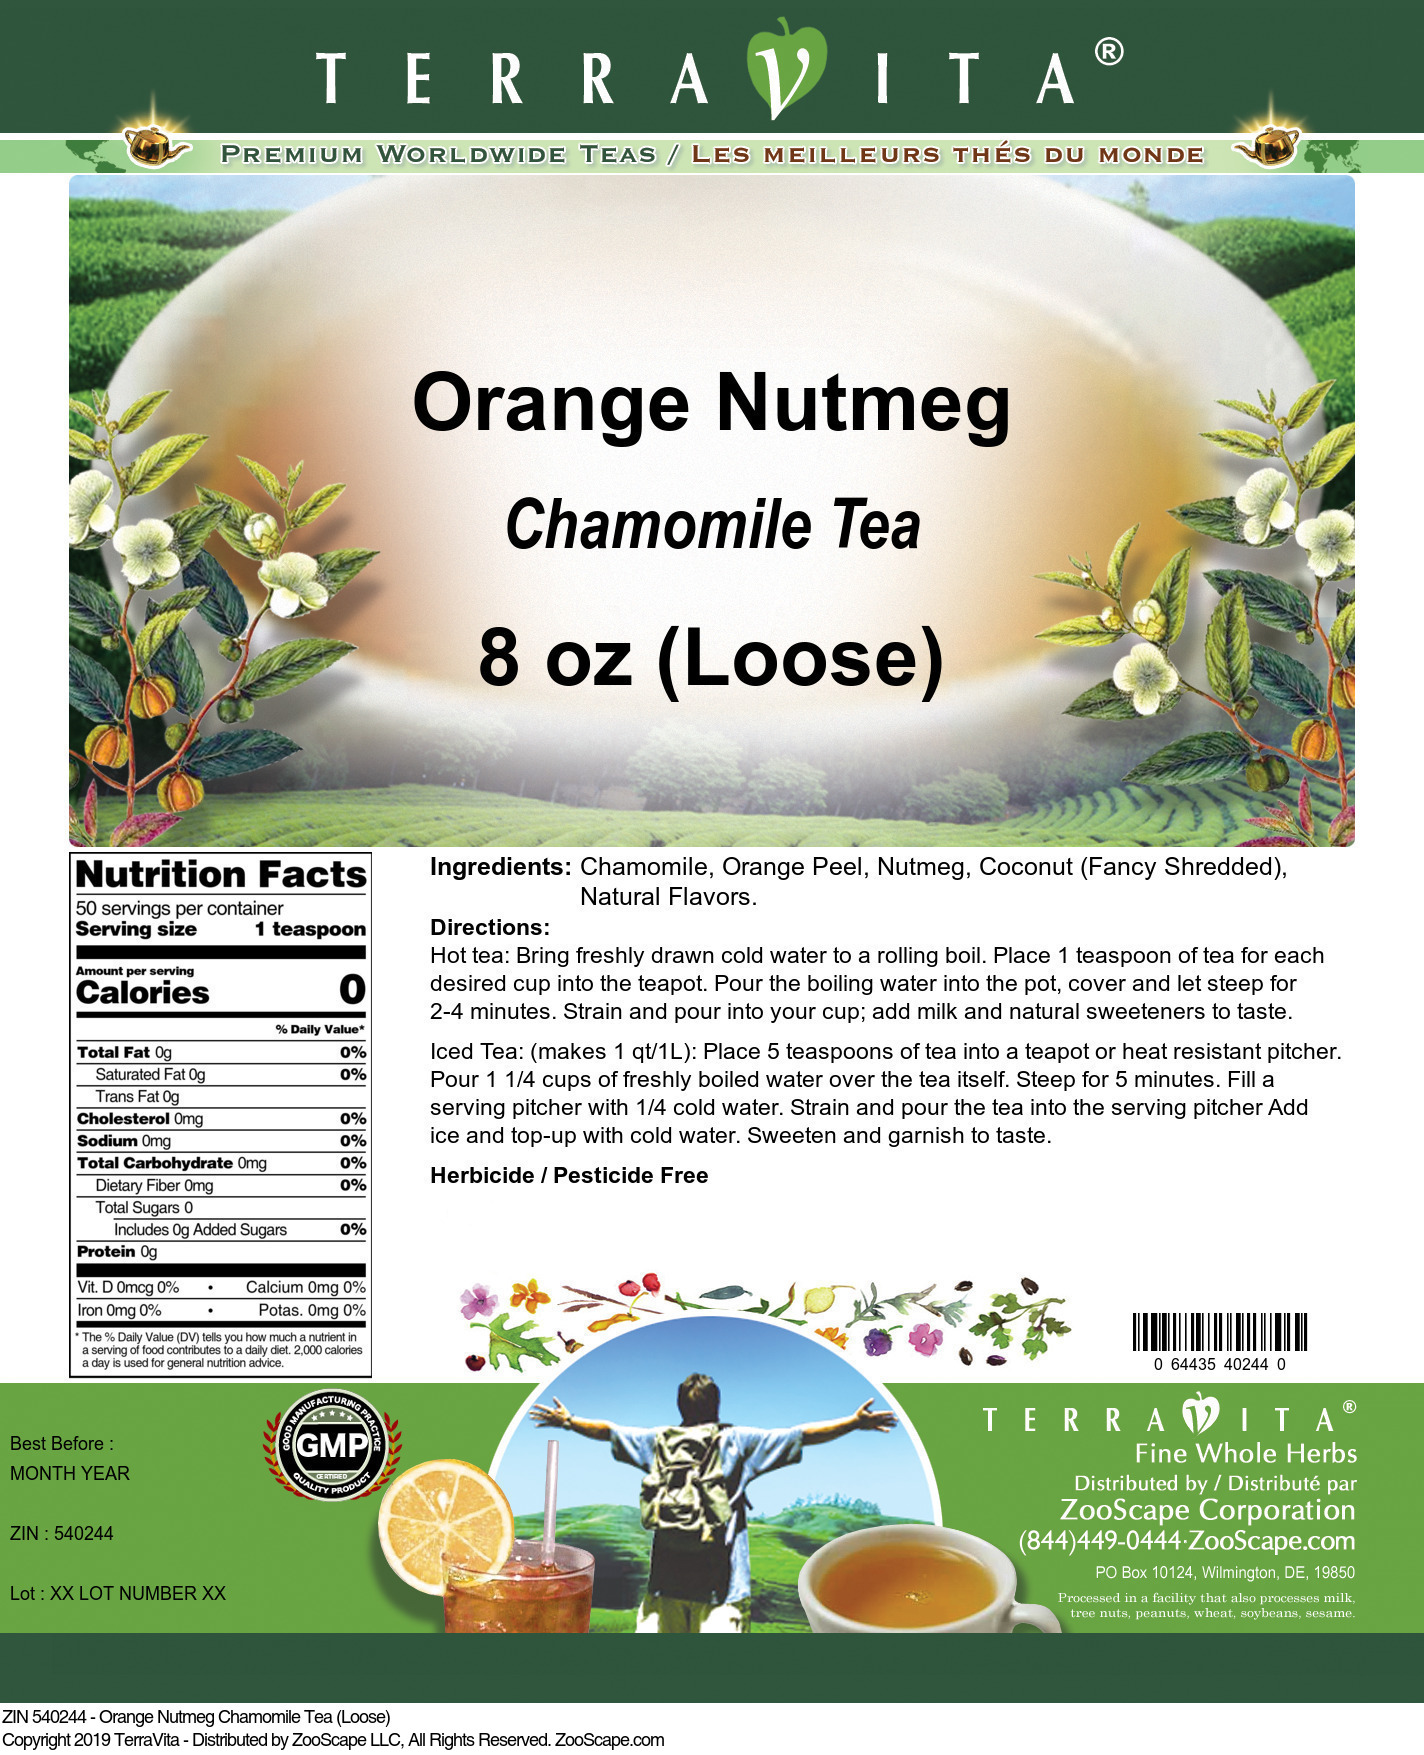 Orange Nutmeg Chamomile Tea (Loose) - Label